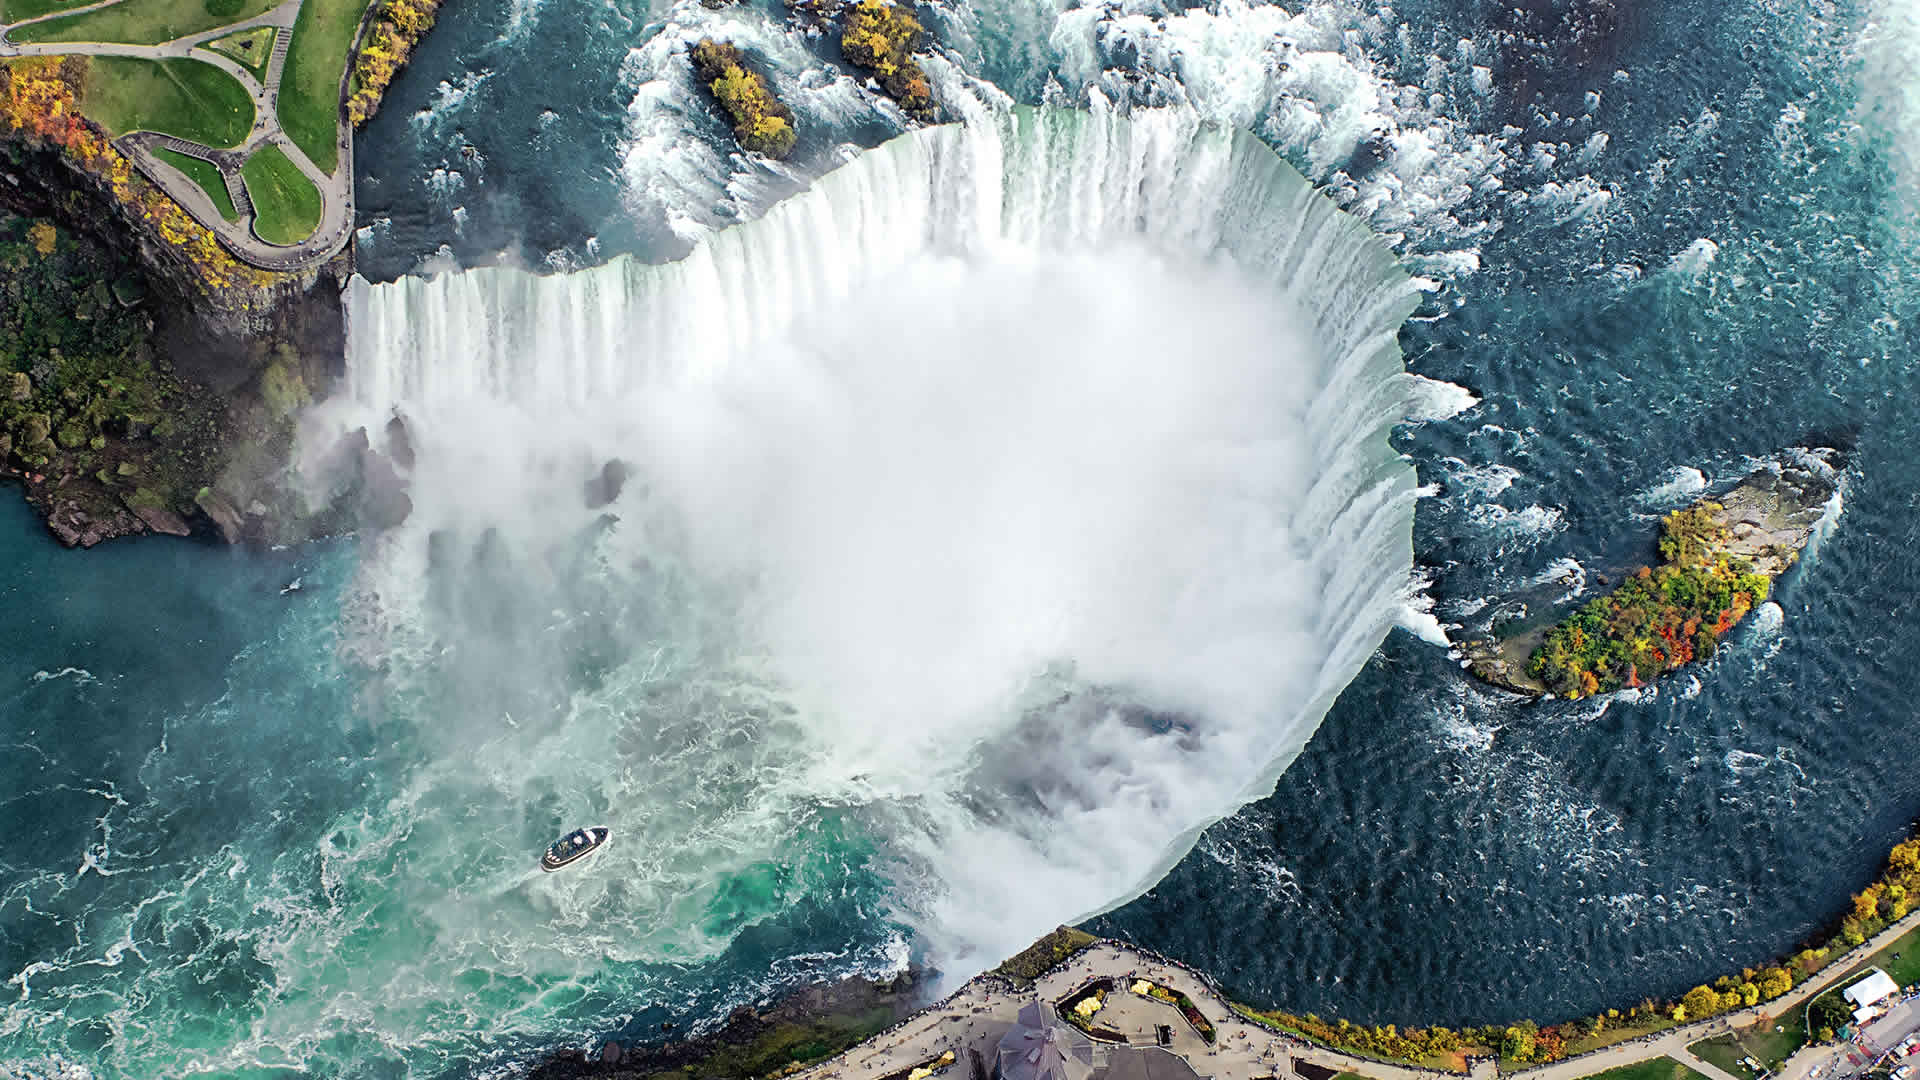 Niagara Falls USA and Canada Tourism